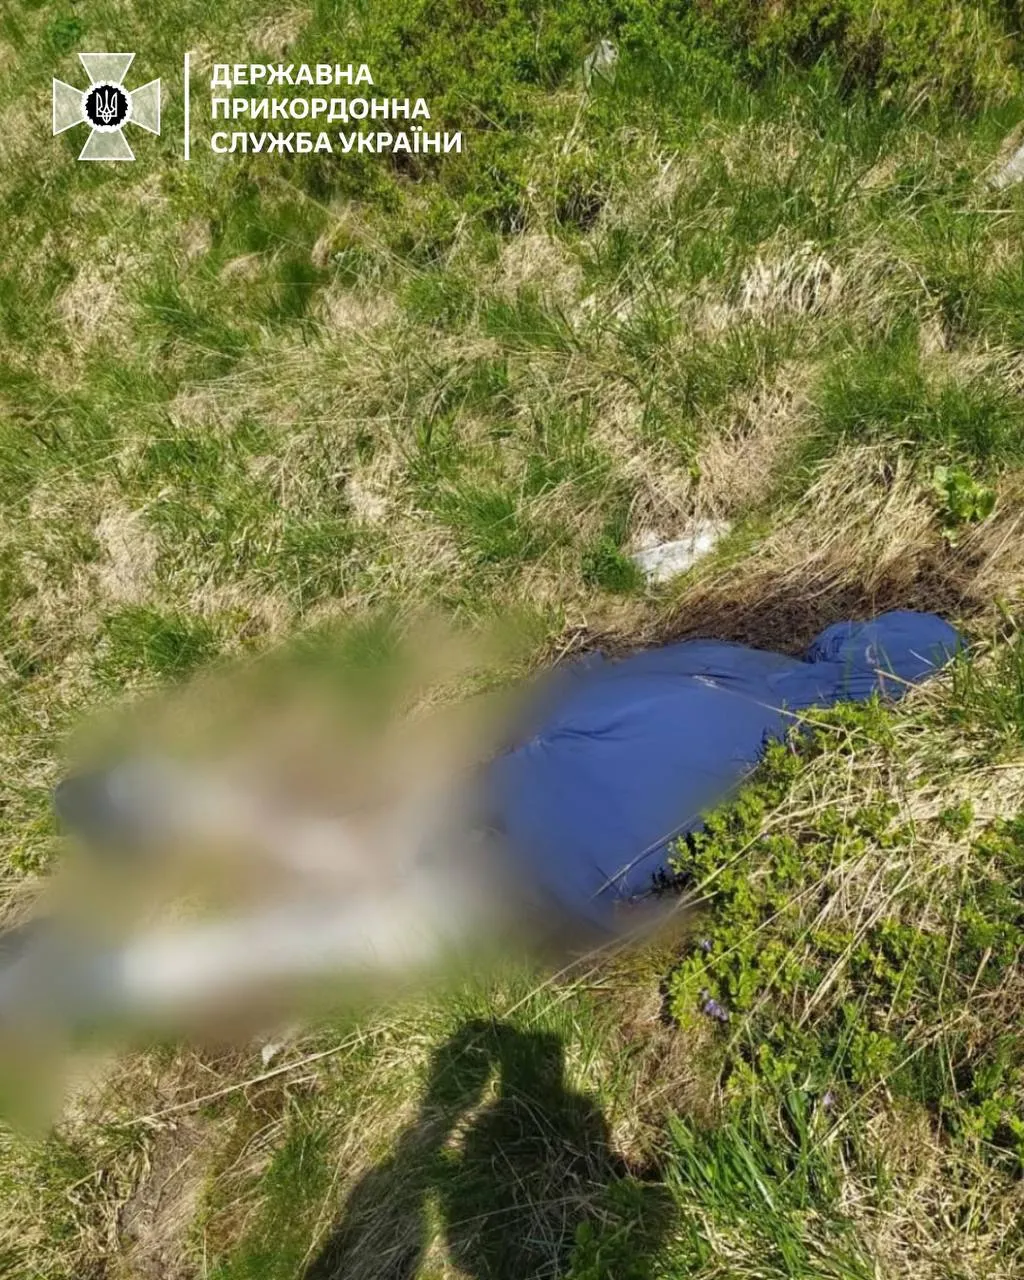 ГПСУ обнаружили тело человека в Карпатах 9 июня